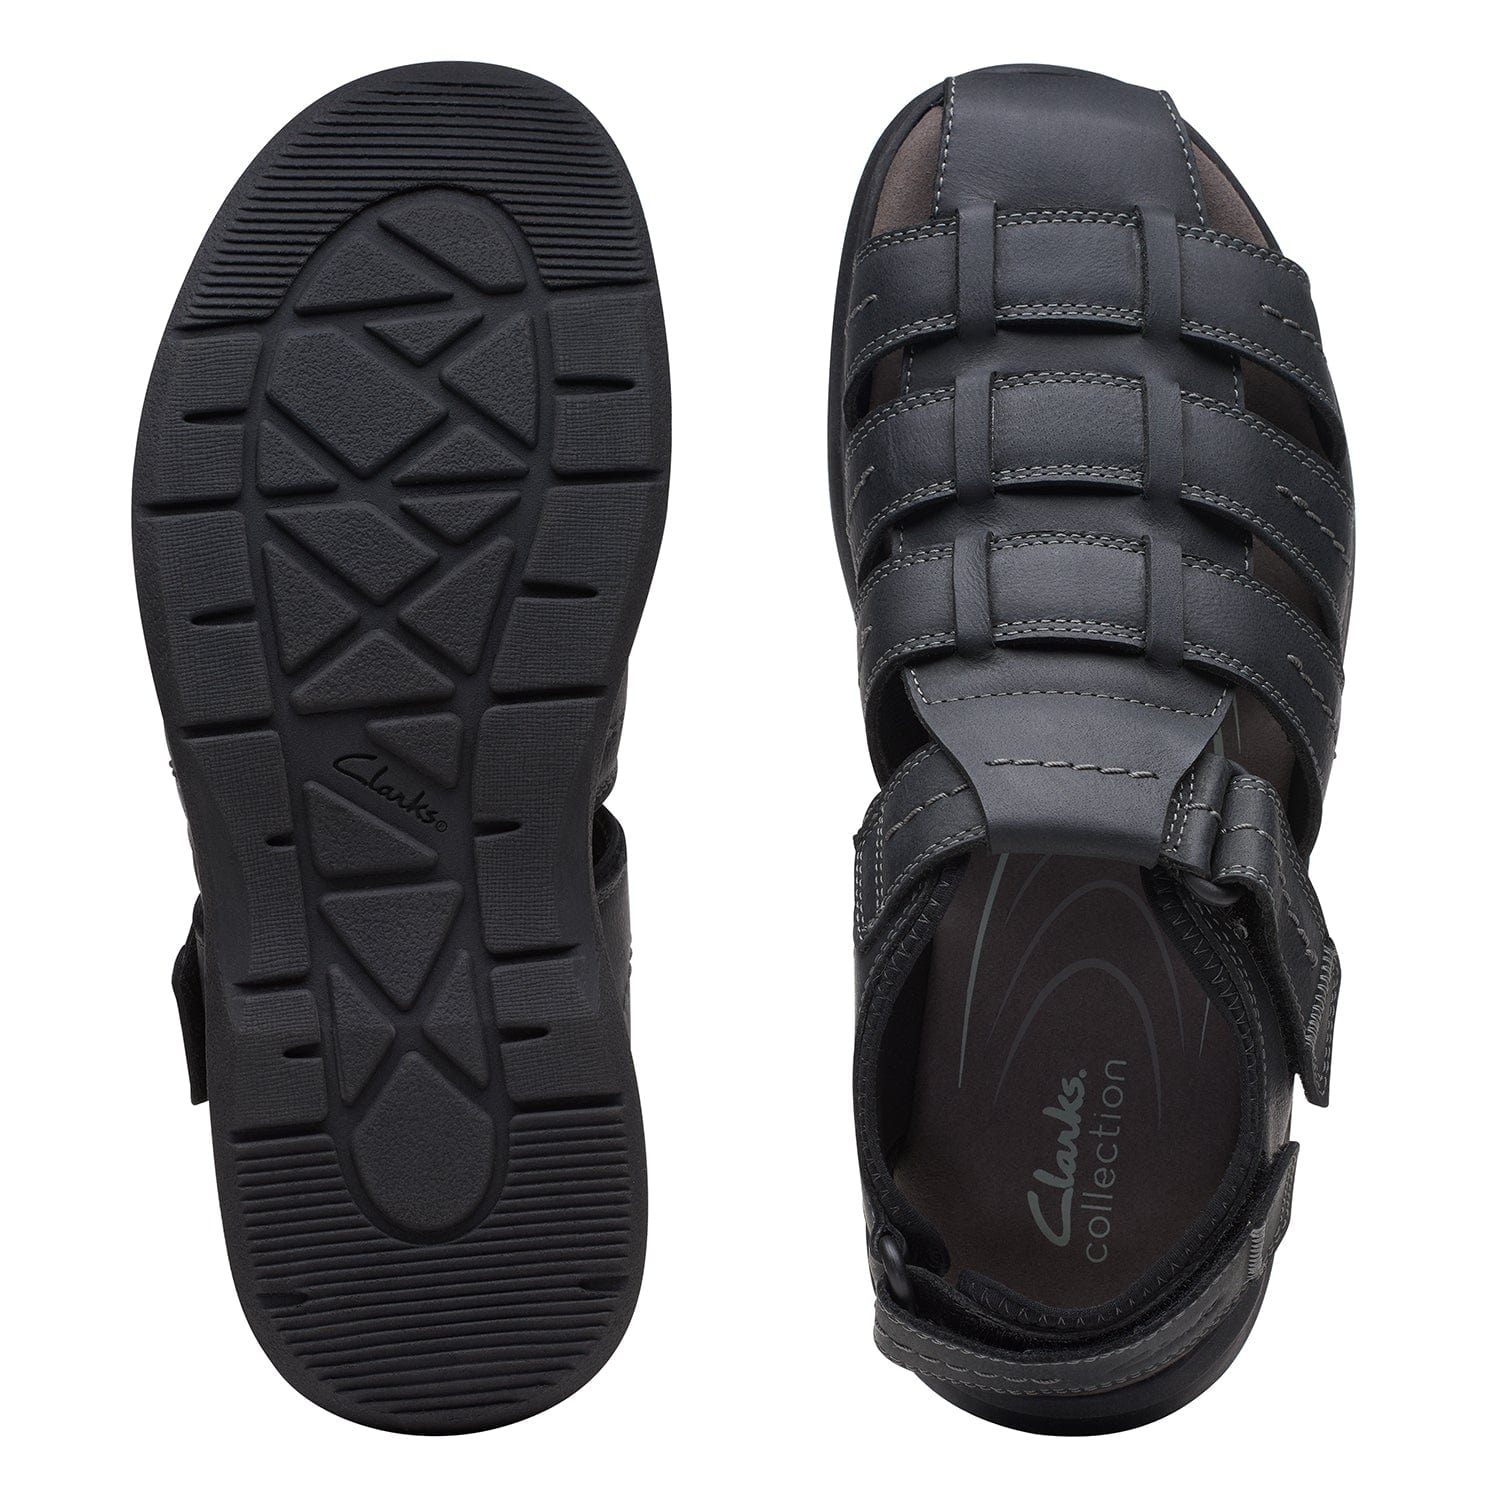 Clarks Walkford Fish - Sandals - Black Tumbled - 261717937 - G Width (Standard Fit)